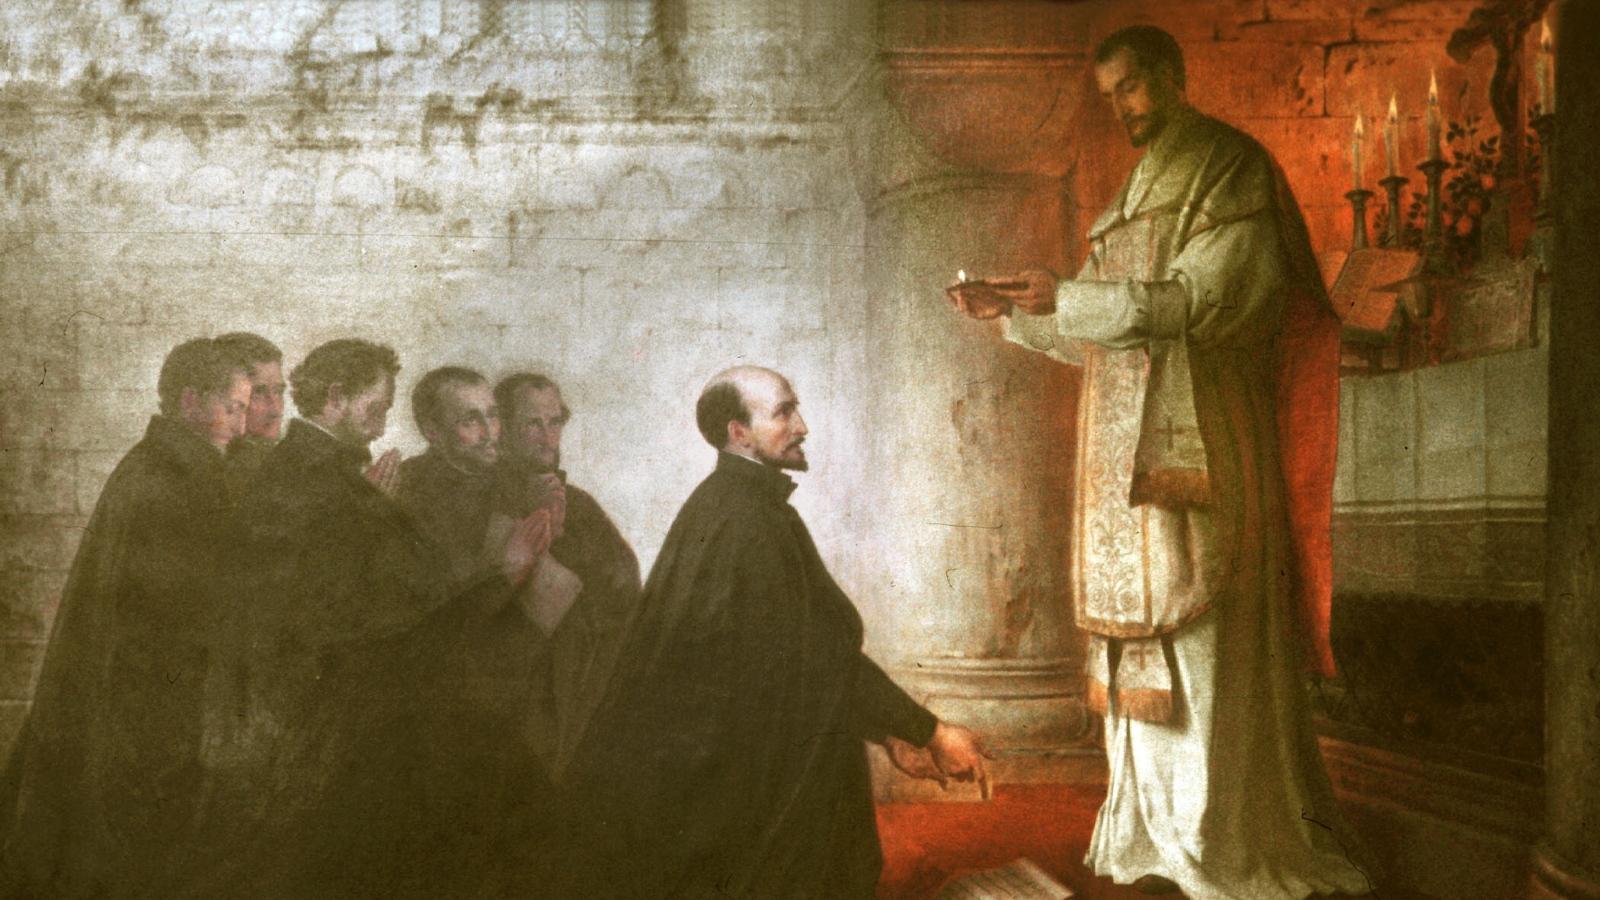 Fest- und Gedenktage Juli 1998..31. Juli Ignatius von Loyola..Bild: Gelübdefeier im Montmartre (Paris), 1534 / Gemälde von Konrad Baumeister (1881)